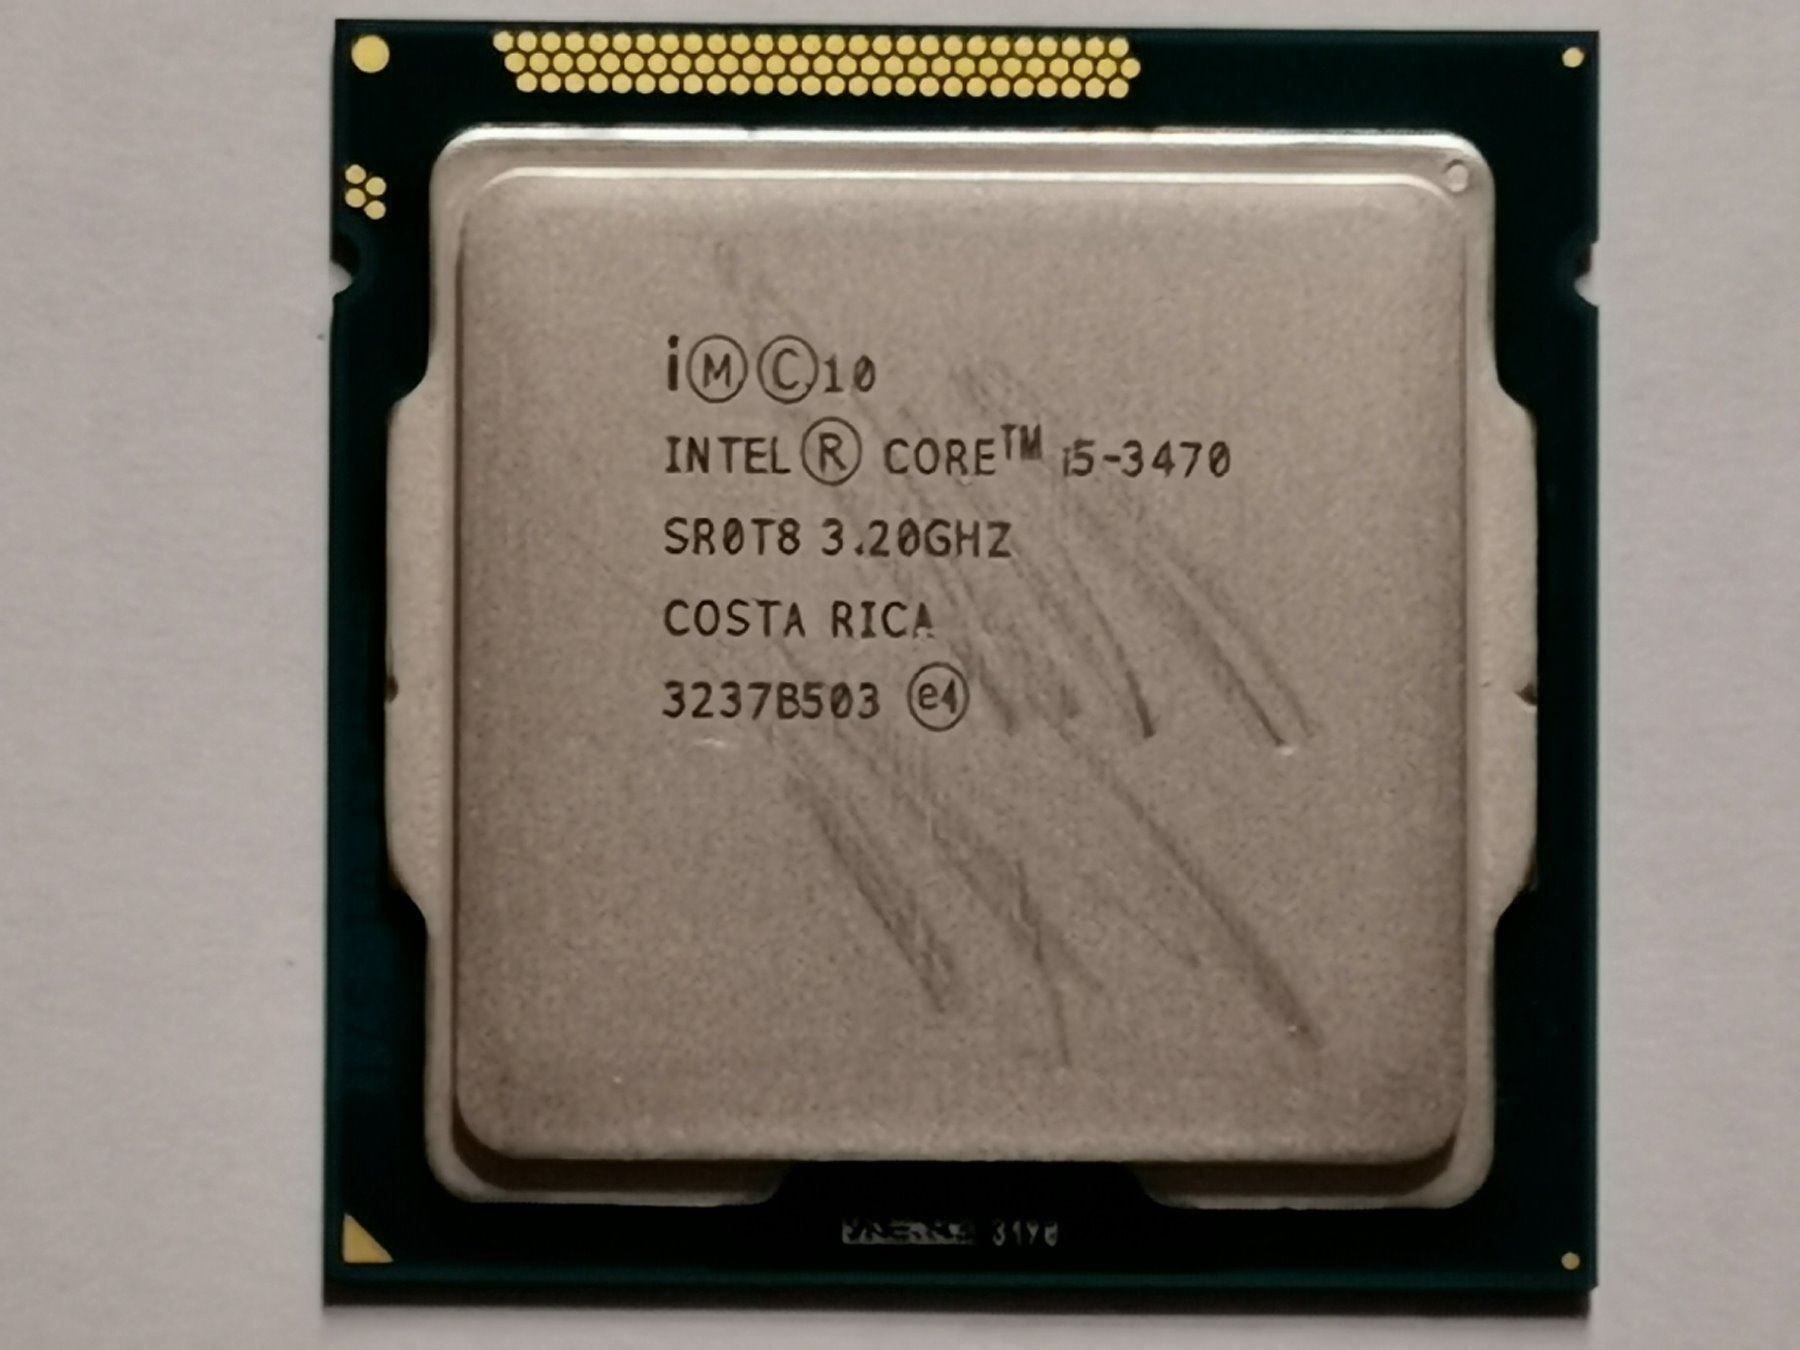 Intel Core i5 3470. Intel(r) Core(TM) i5-3470 CPU @ 3.20GHZ 3.20 GHZ. I5 3470 характеристики. I5 3470 s spec. I5 3470 сравнение